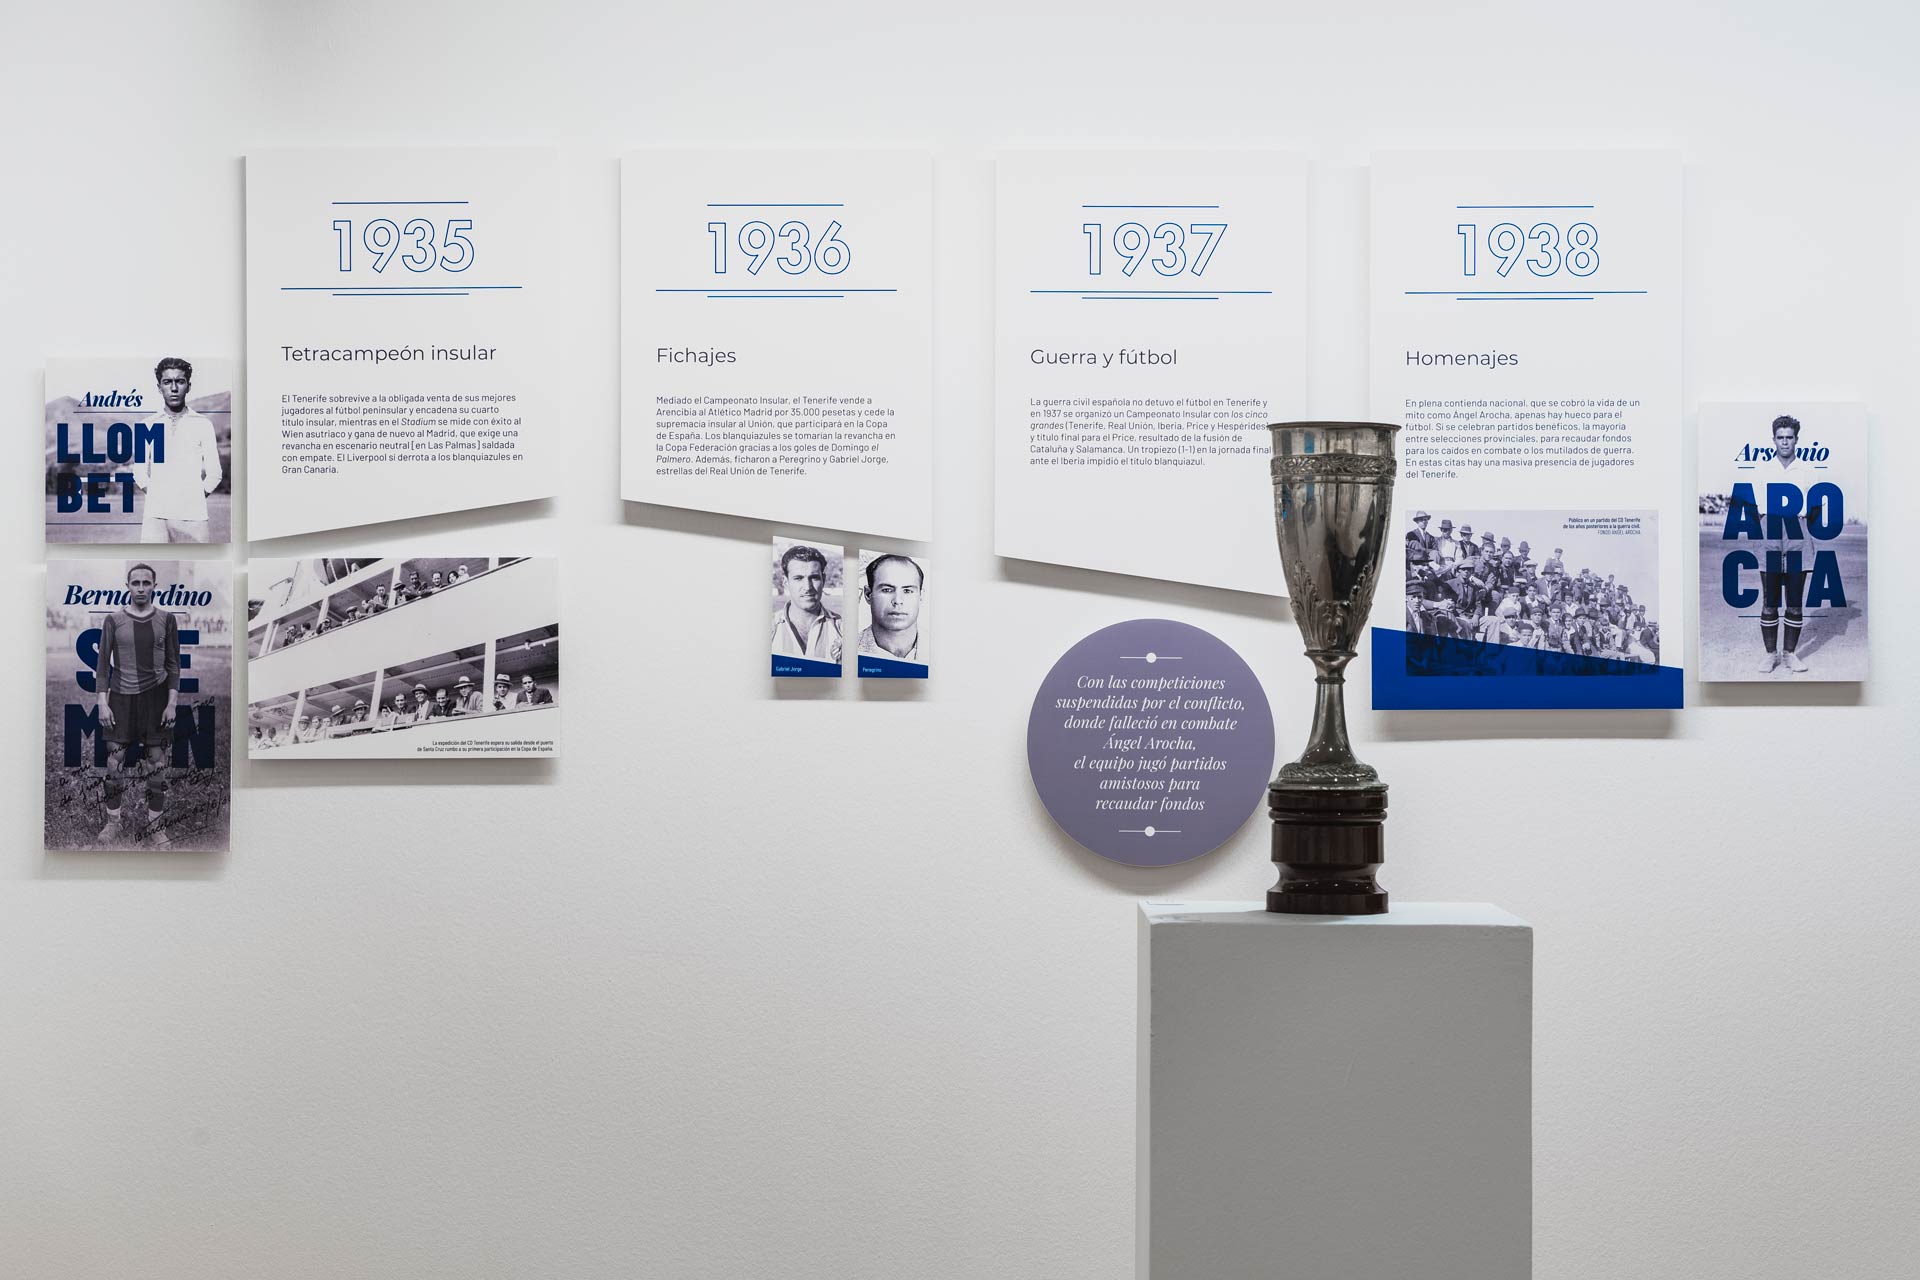 Exposición CD Tenerife: Vista frontal de pared, en ella se encuentran los paneles descriptivos de los años 1935, 1936, 1937 y 1938, acompañados de algunas fotos en blanco y negro así como de un trofeo de la época.